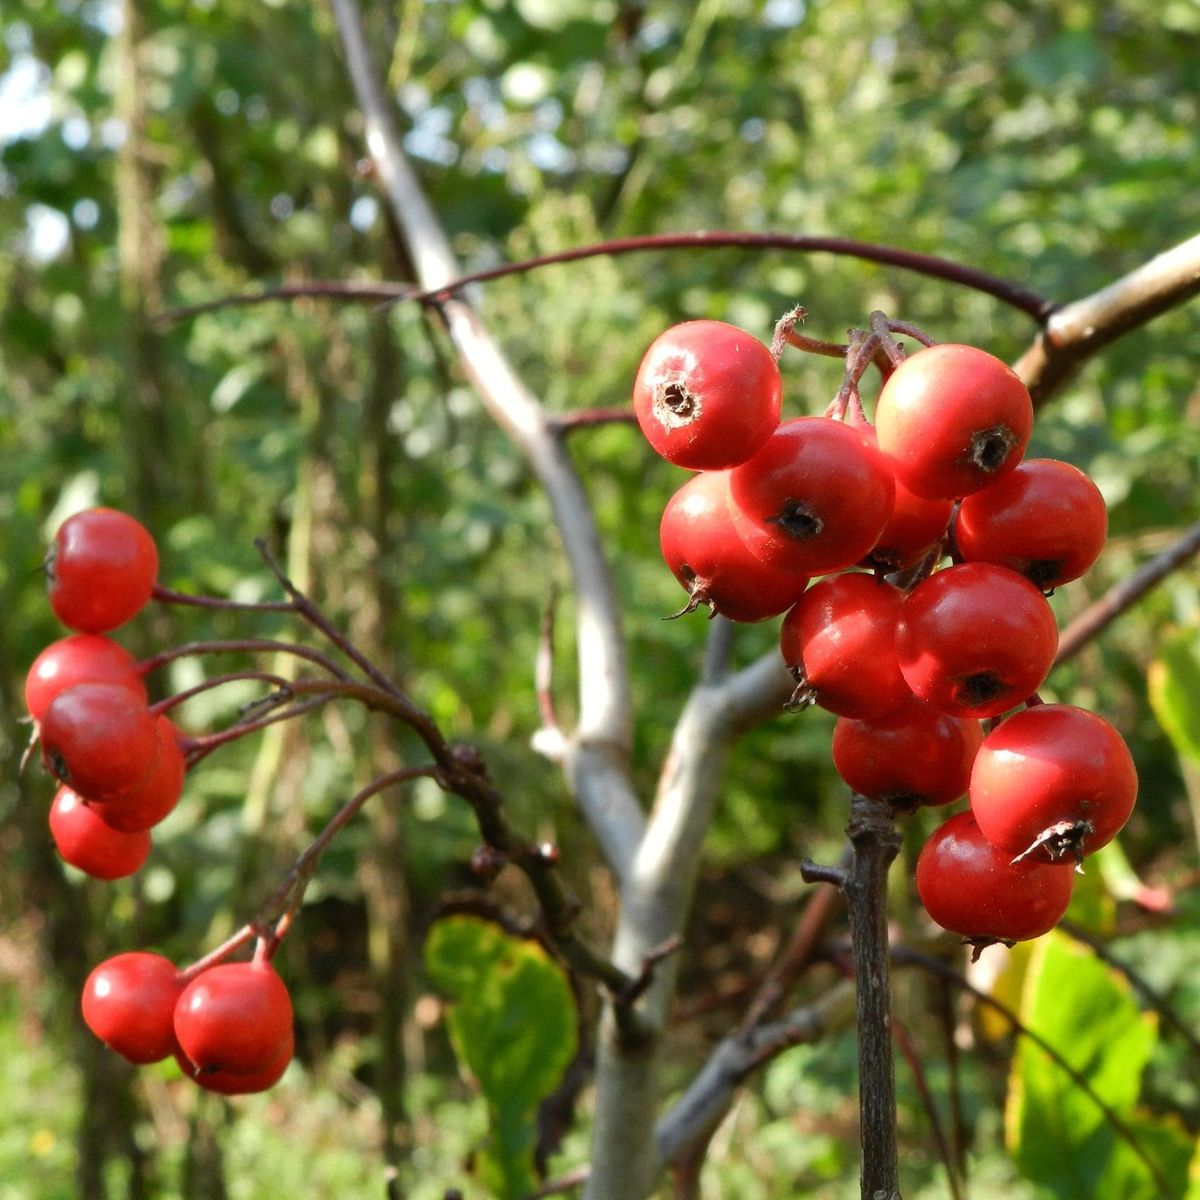 Mehlbeere-Birnbaum Kreuzung - Rubinovaja kaufen und pflanzen